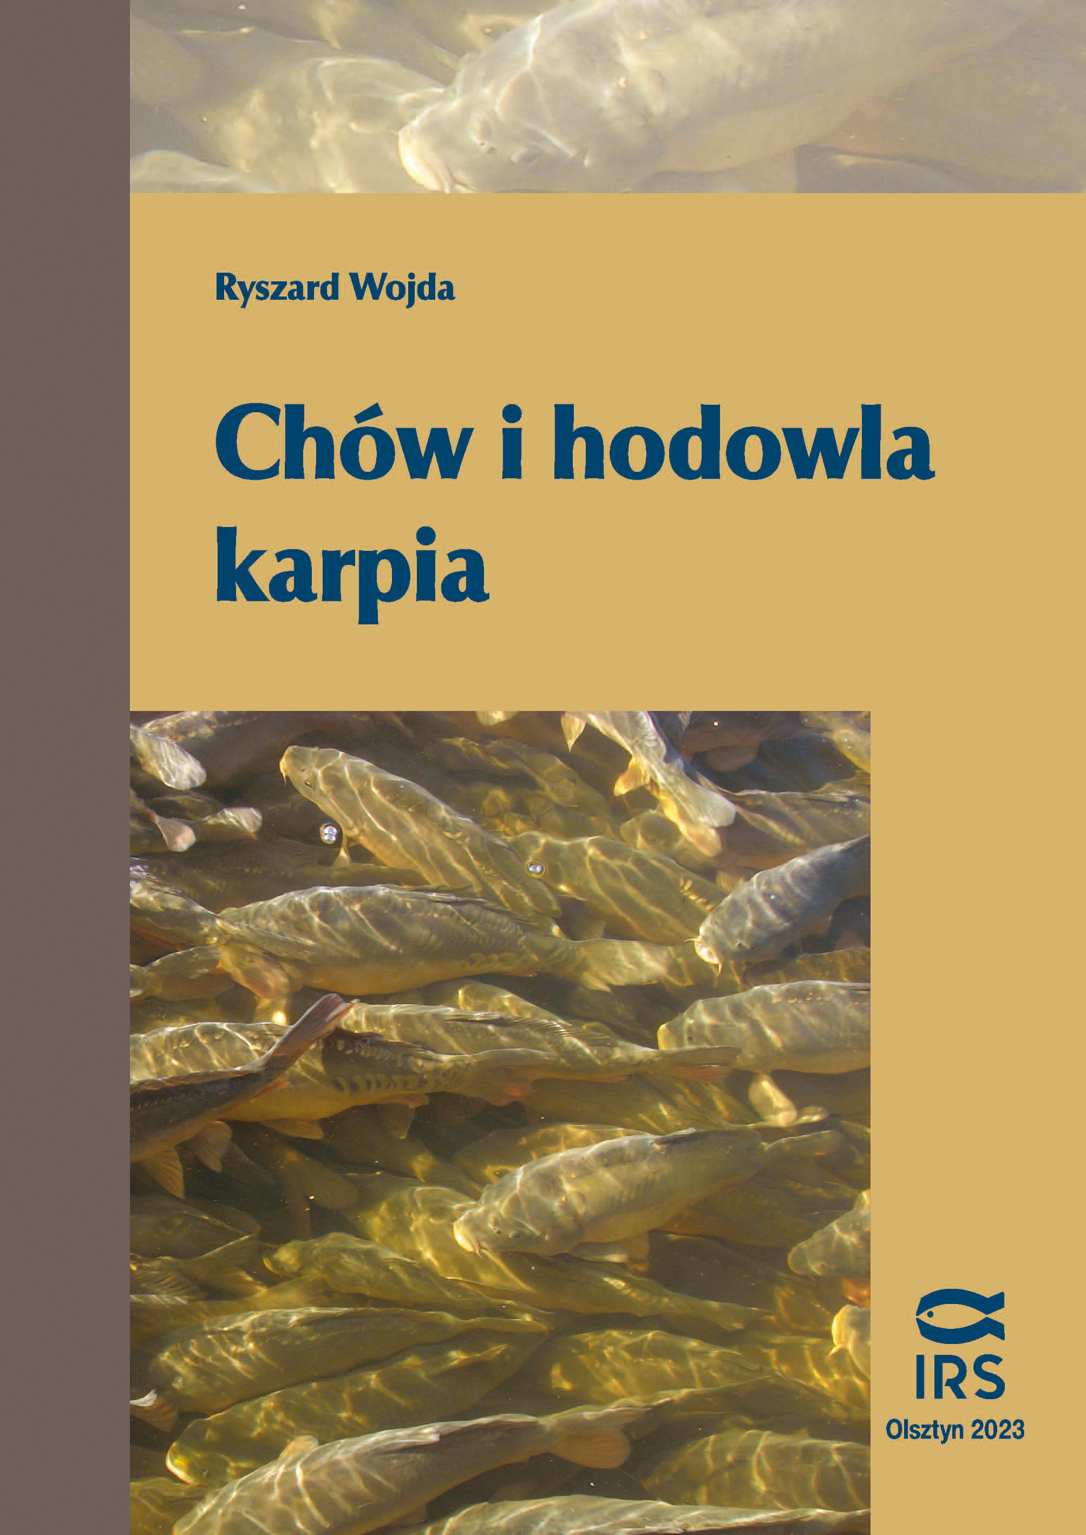 Ryszard Wojda, 2023 - Chów i hodowla karpia. wydanie V, wznowione, poprawione i uzupełnione, Wyd. IRS, s. 457